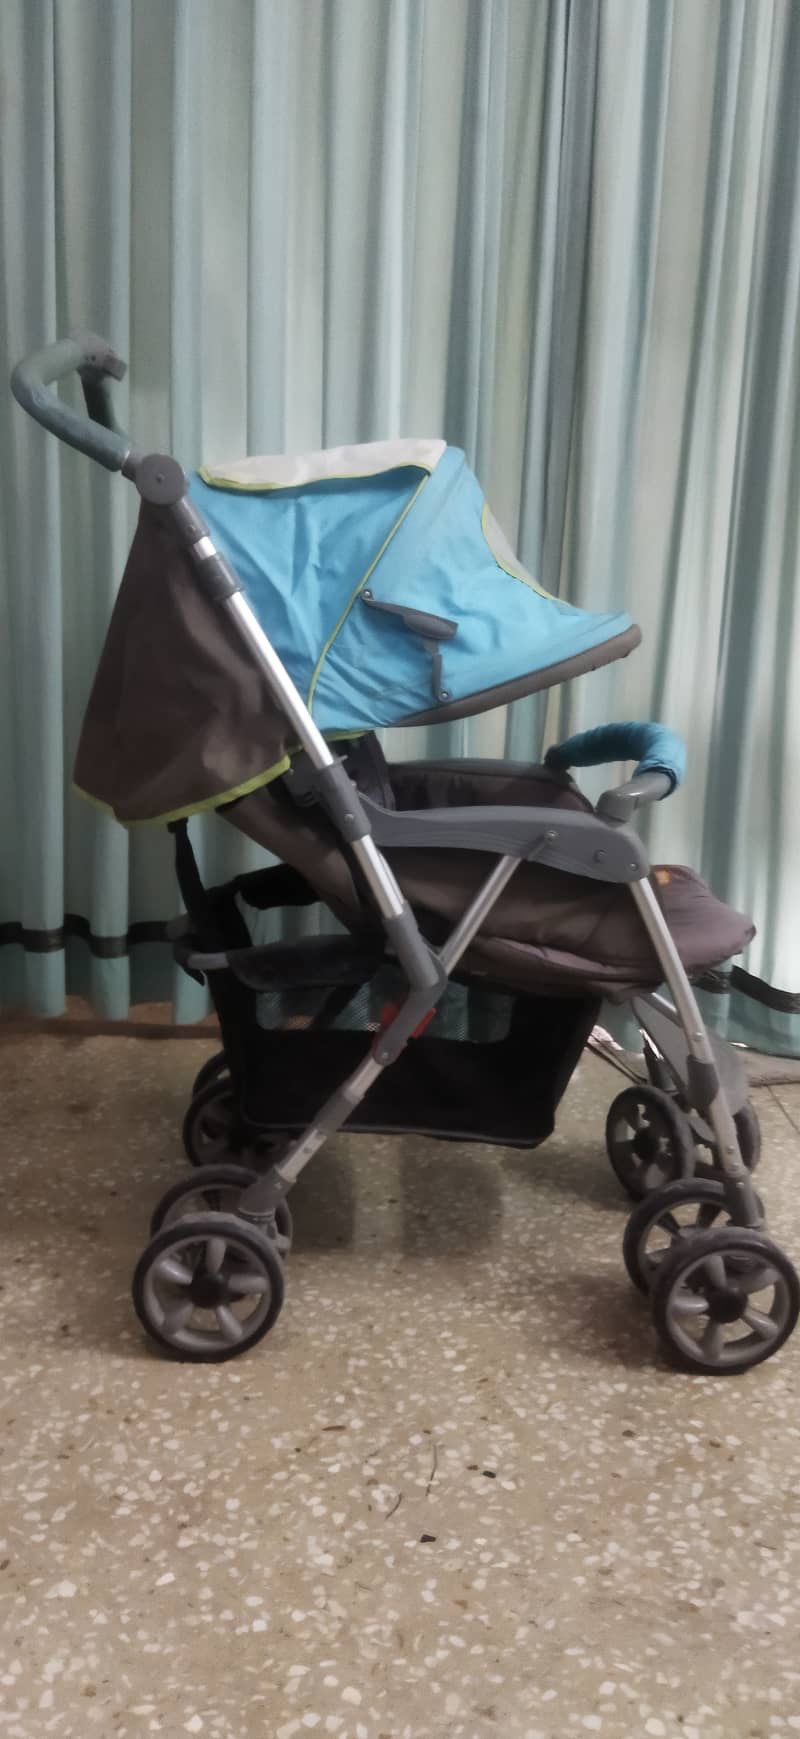 Junior's Brand imported baby stroller / pram 4